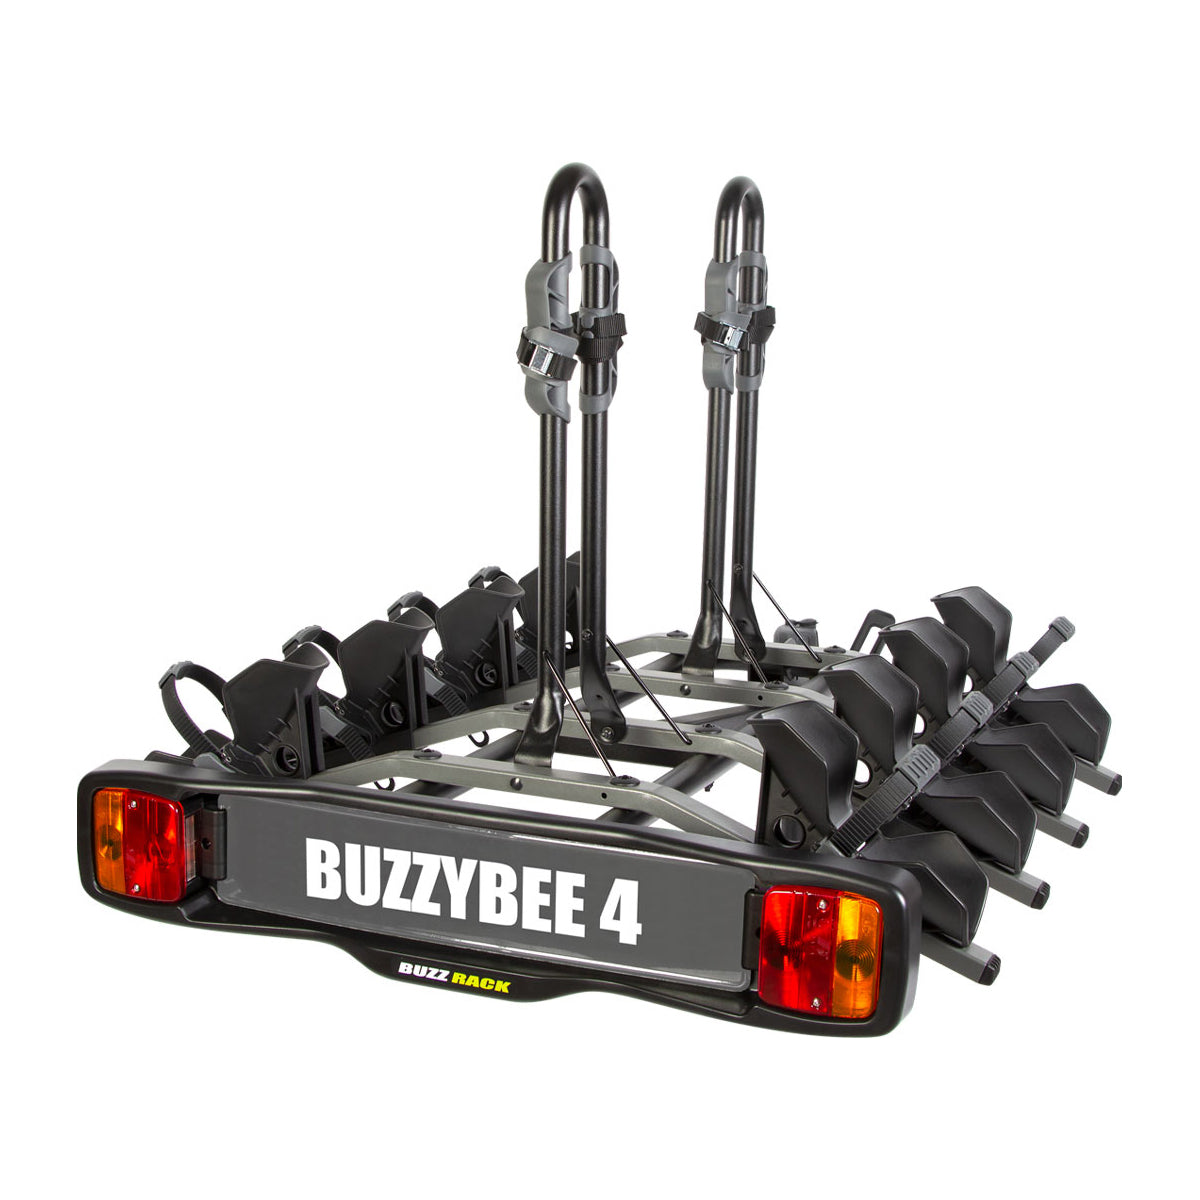 Buzz Rack Buzzy Bee Platform Towball Bike Rack - V2 - 4 Bike